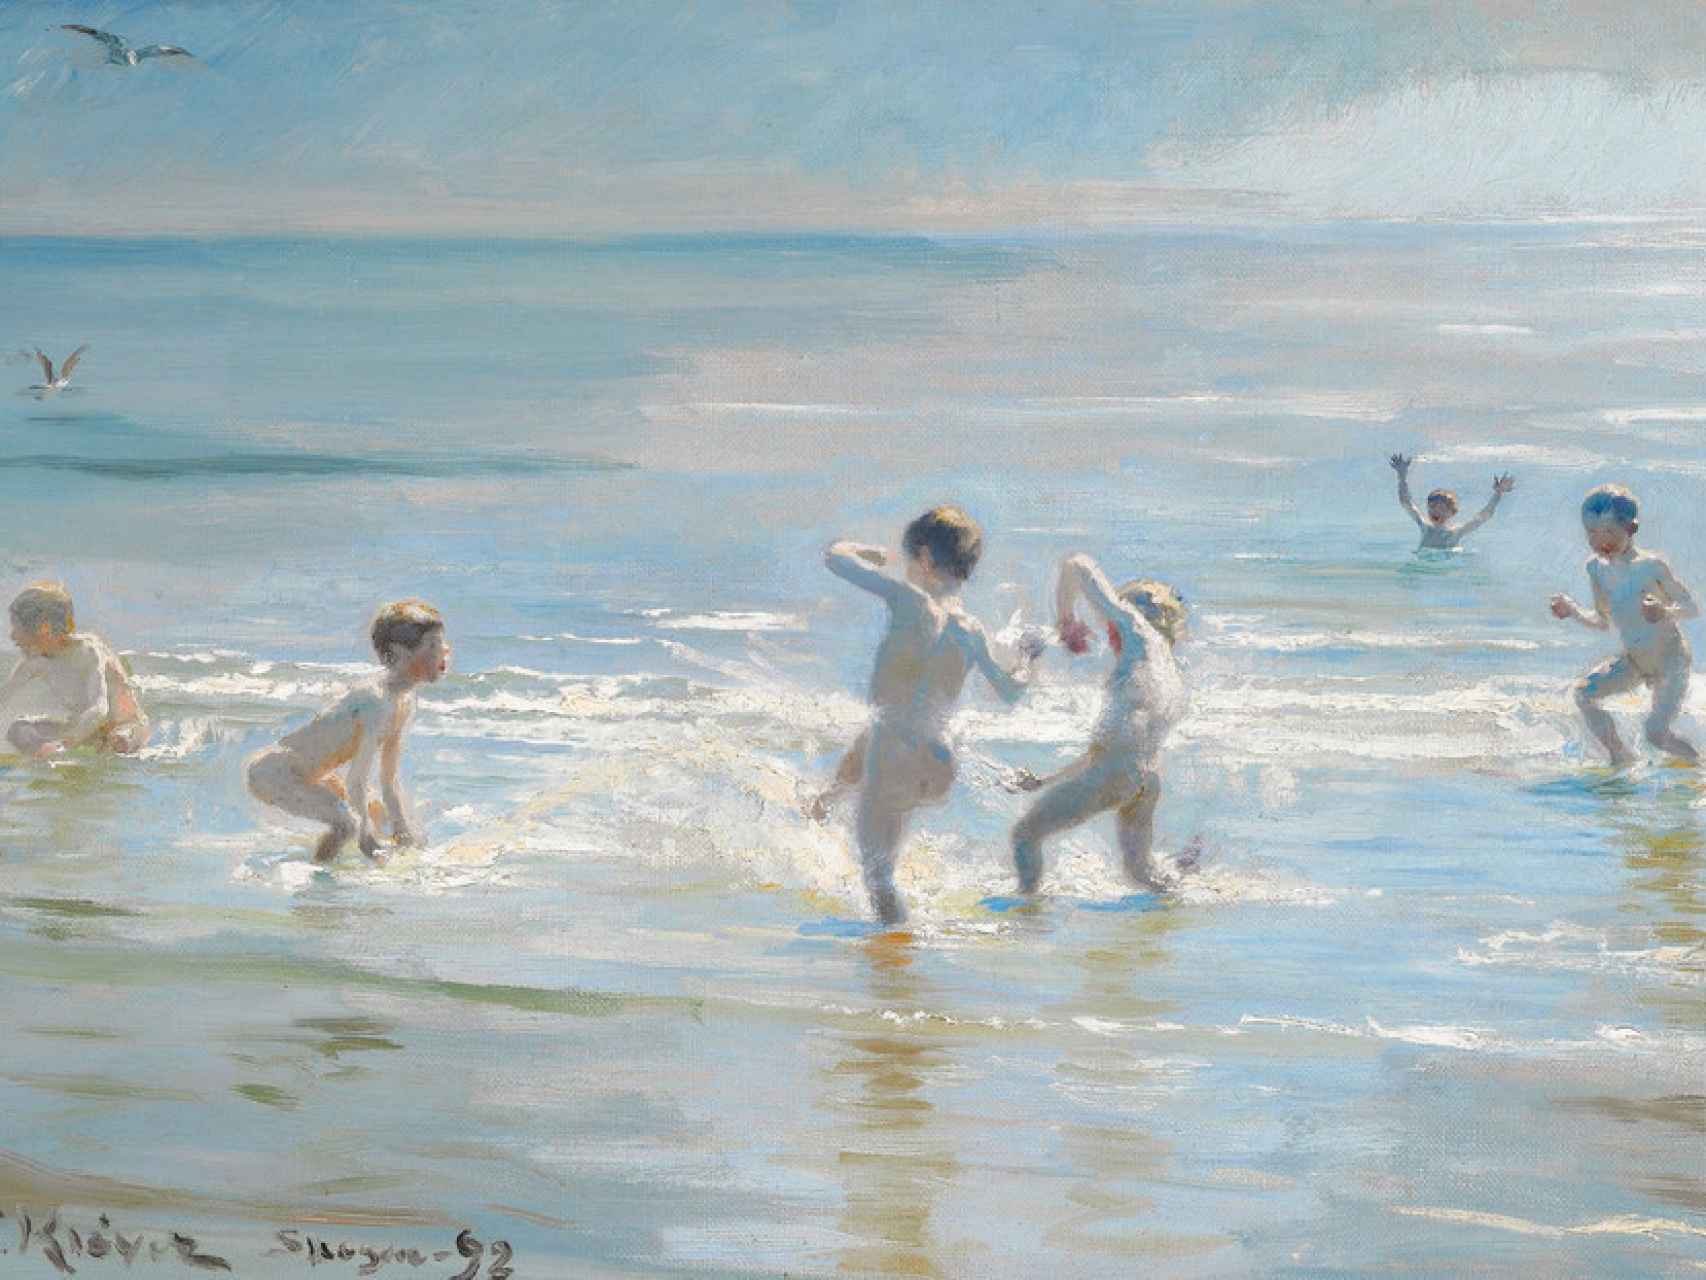 Niños jugando en la playa, pintado en 1892 por Kroyer.